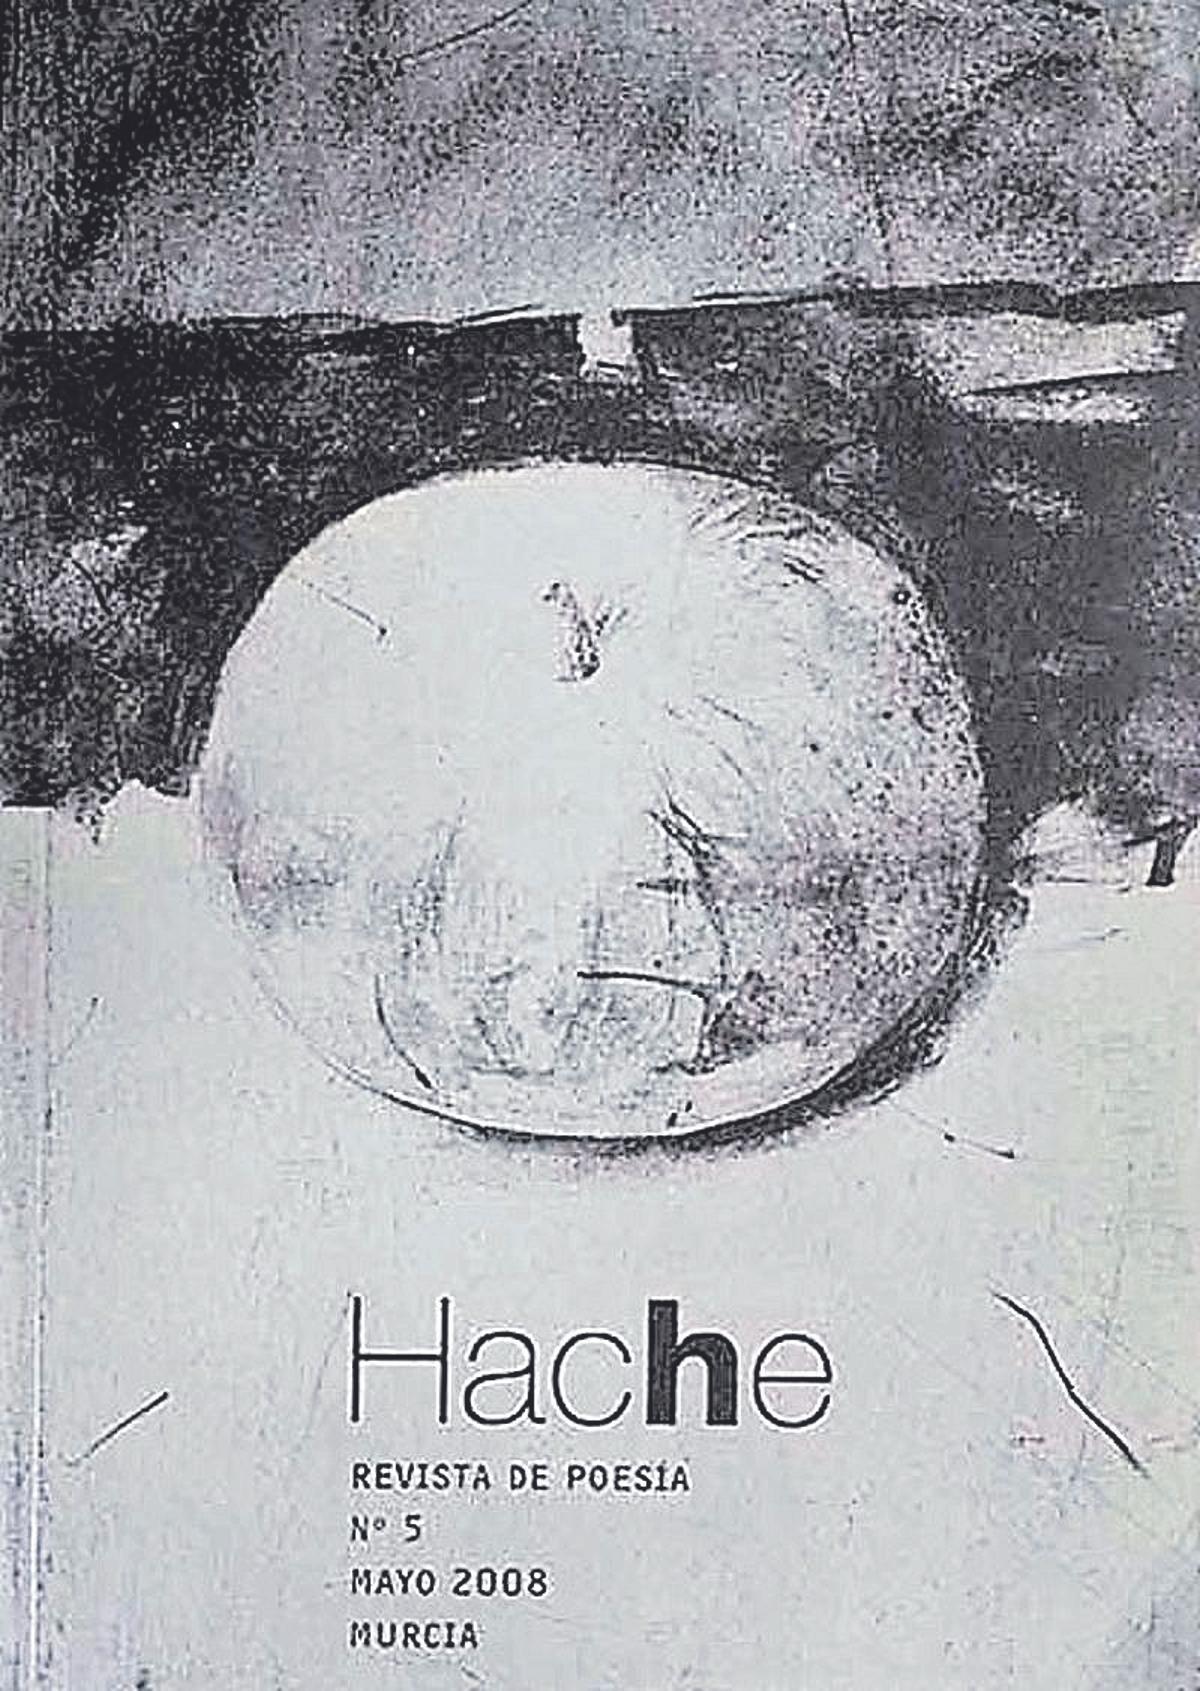 Imagen Fig. 30 Pedro Cano. Hache, número 5. Mayo, 2008.